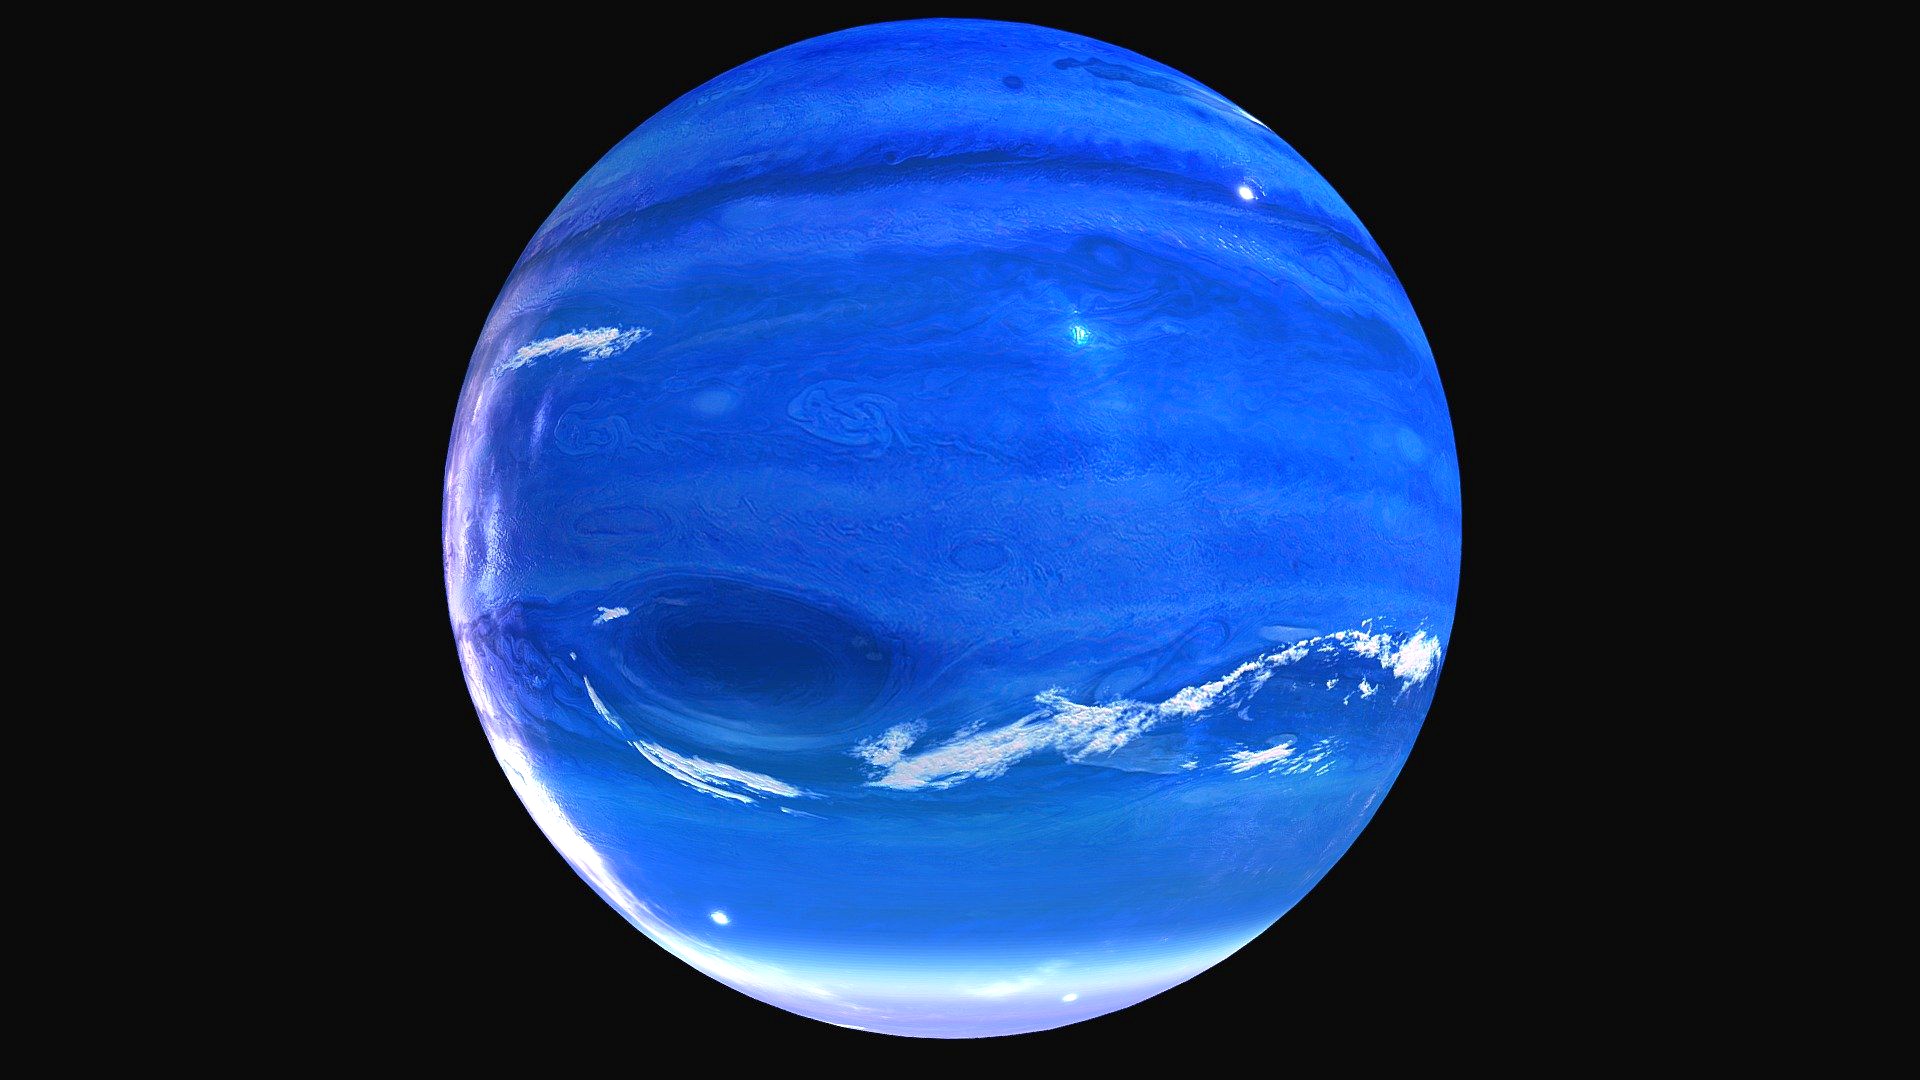 Neptune - Ice Giant